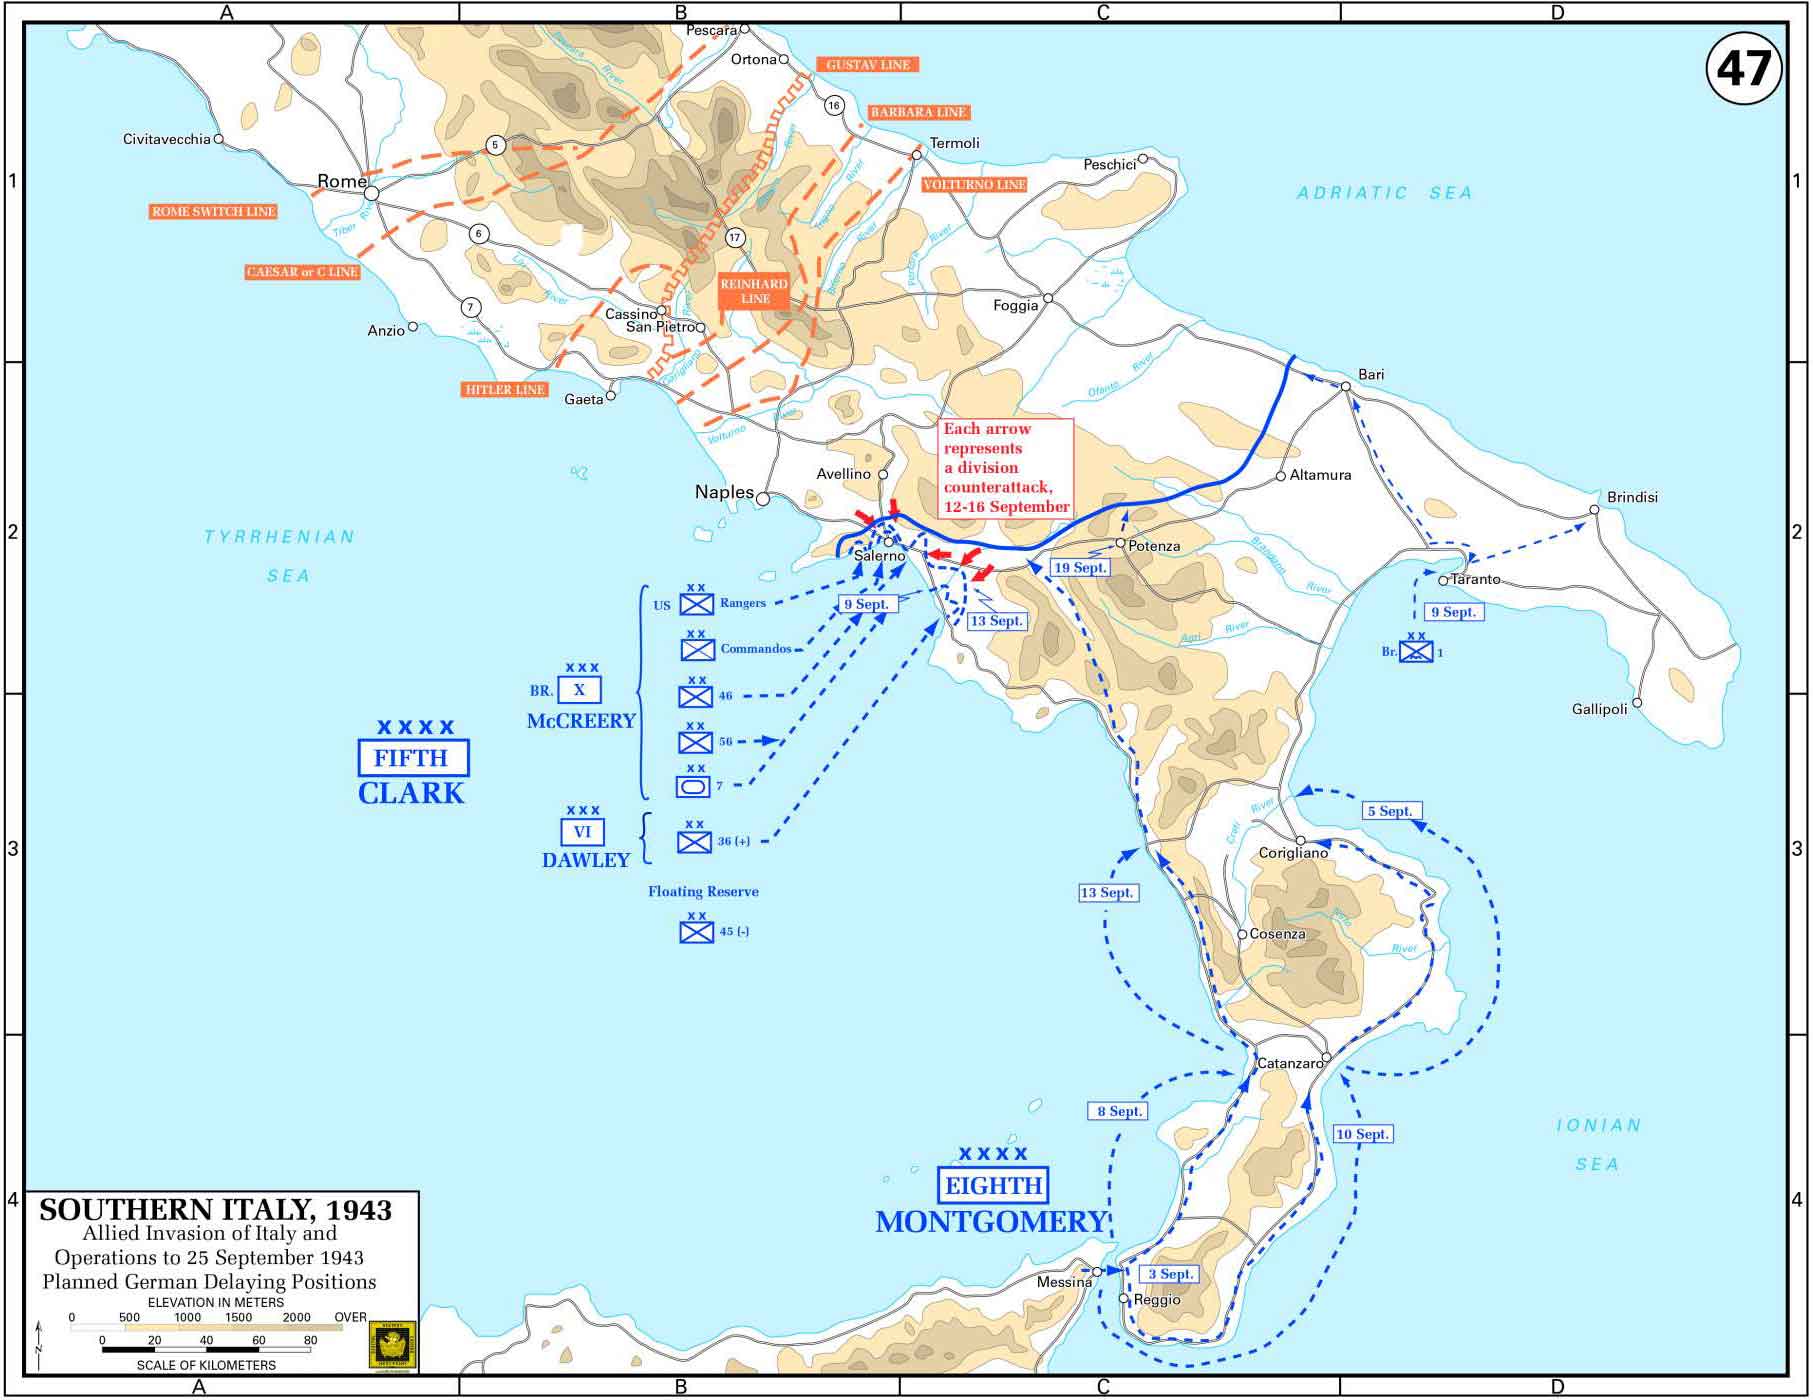 Mappa delle operazioni alleate in Italia meridionale